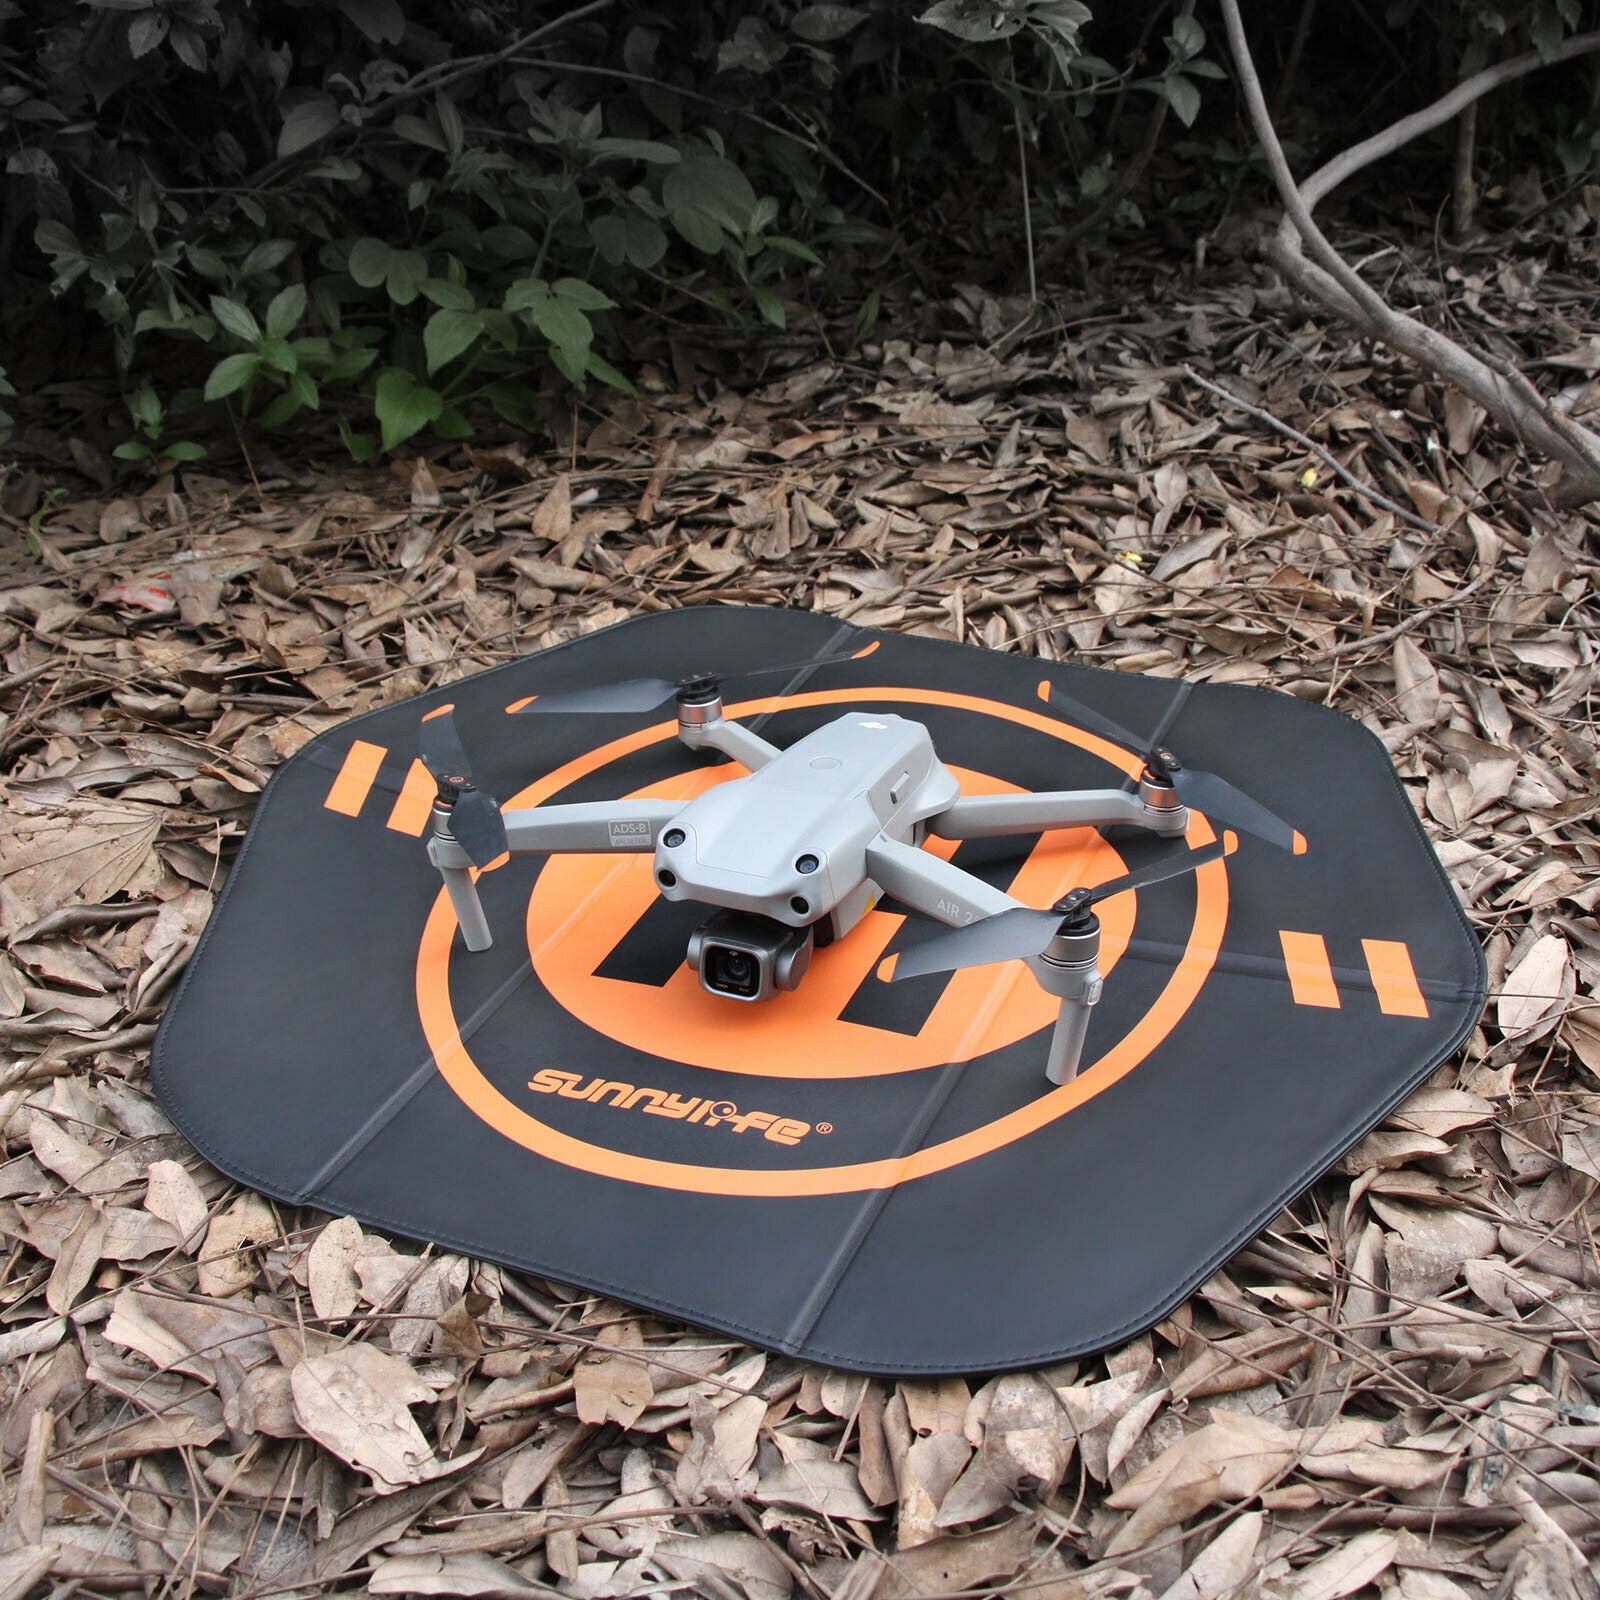 Landing Pad Parking Take-off Land Mat for DJI Mini SE/Air 2S/DJI FPV Drones